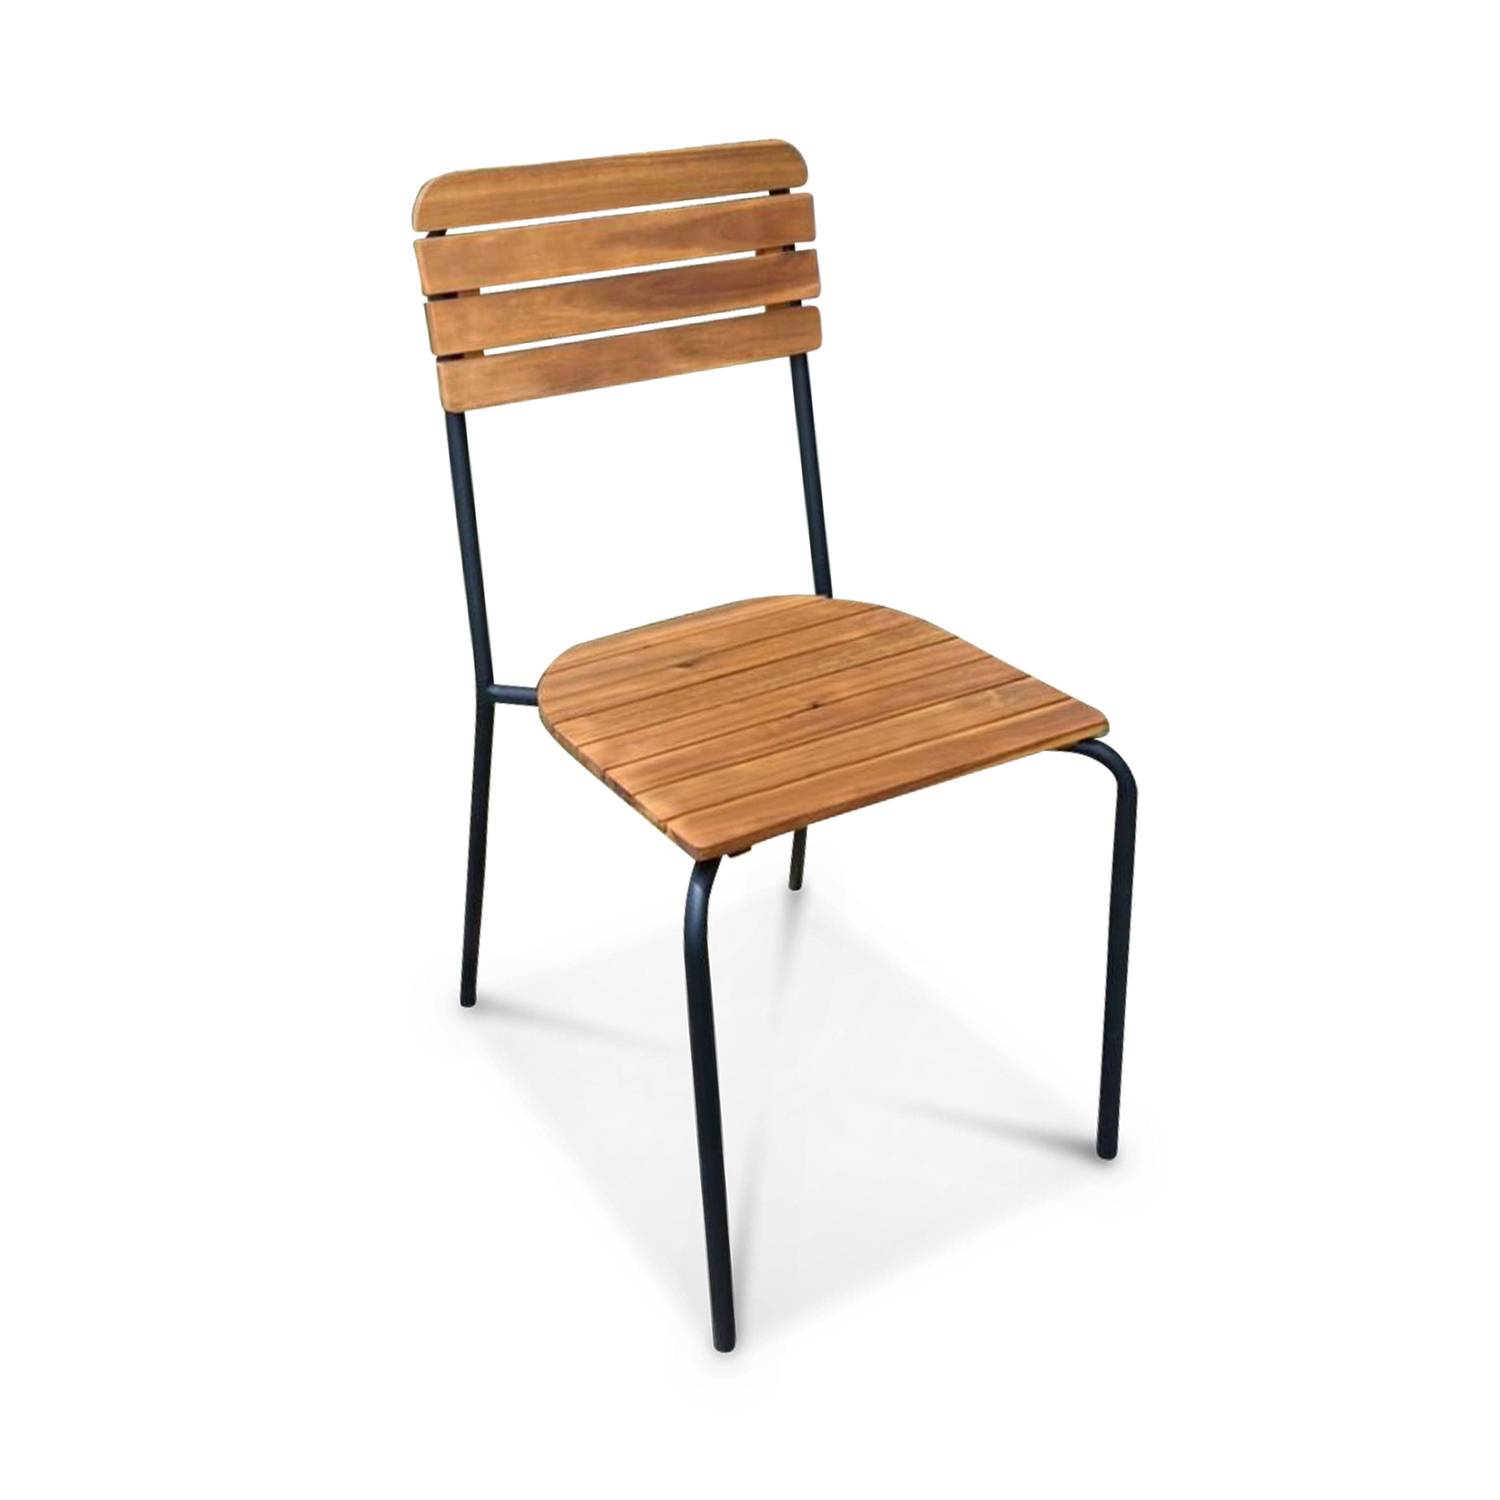 Gartenmöbel-Set aus Holz und Metall 180x90cm - Lima - Rechteckiger Tisch aus Akazie und Metall mit 4 Stühlen und 2 stapelbaren Sesseln Photo7